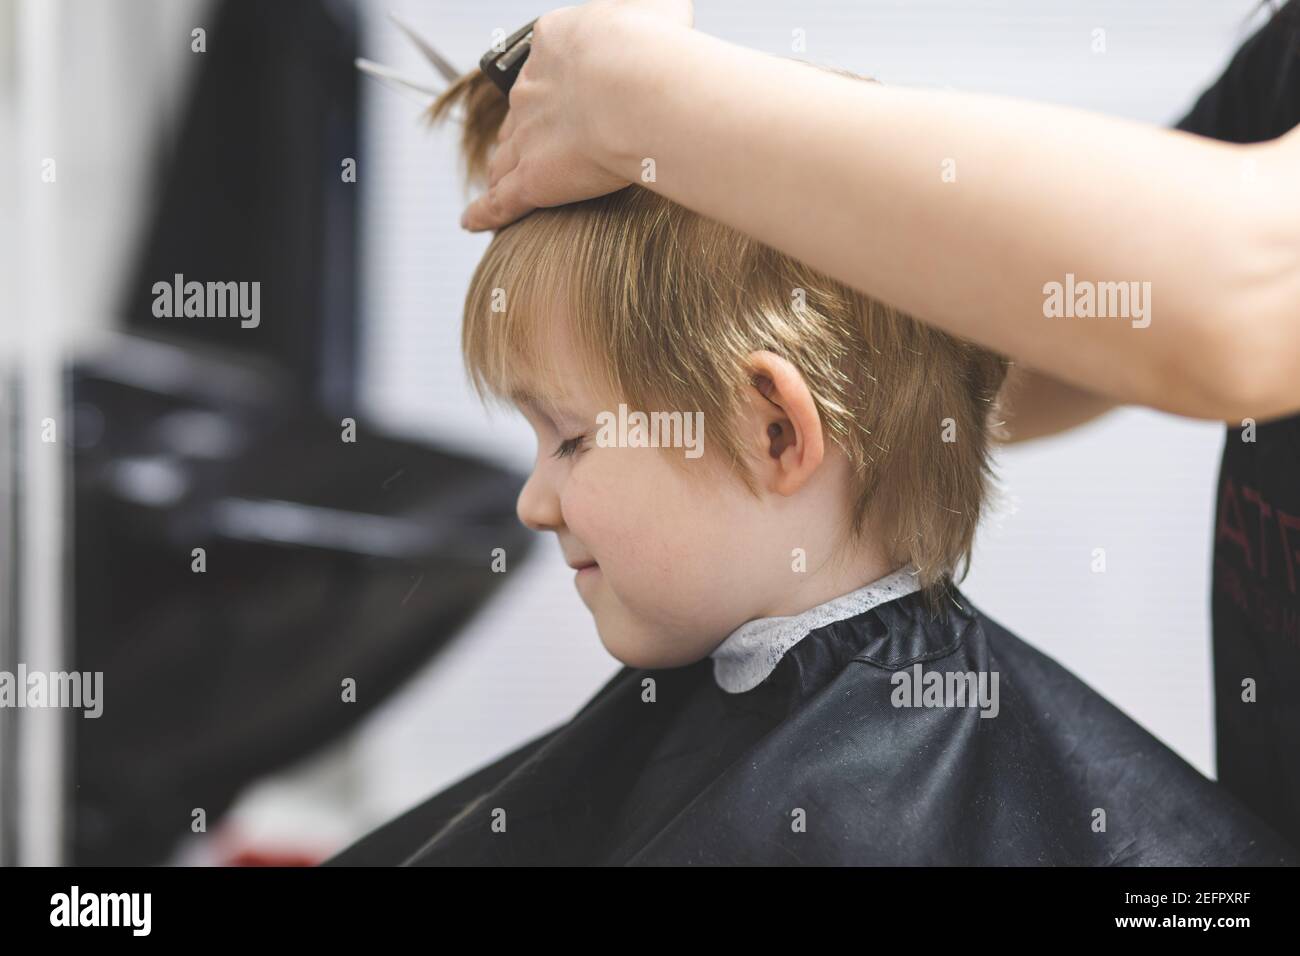 Le coiffeur coupe les cheveux heureux sourire blond enfant garçon. Gros plan sur le style de vie. Concept de beauté, d'hygiène. Banque D'Images